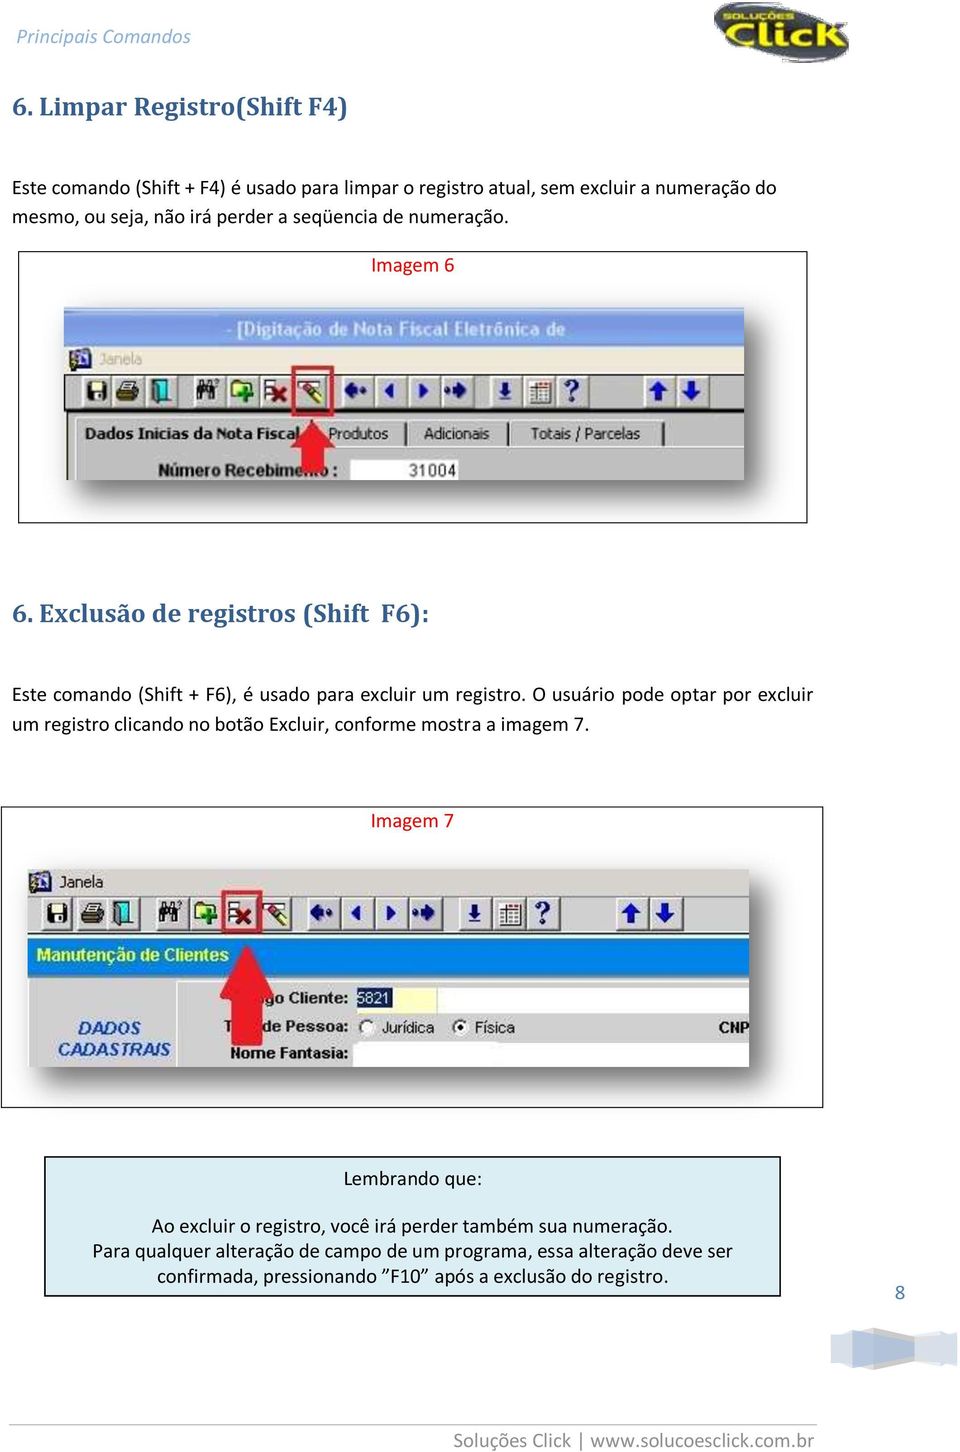 O usuário pode optar por excluir um registro clicando no botão Excluir, conforme mostra a imagem 7.